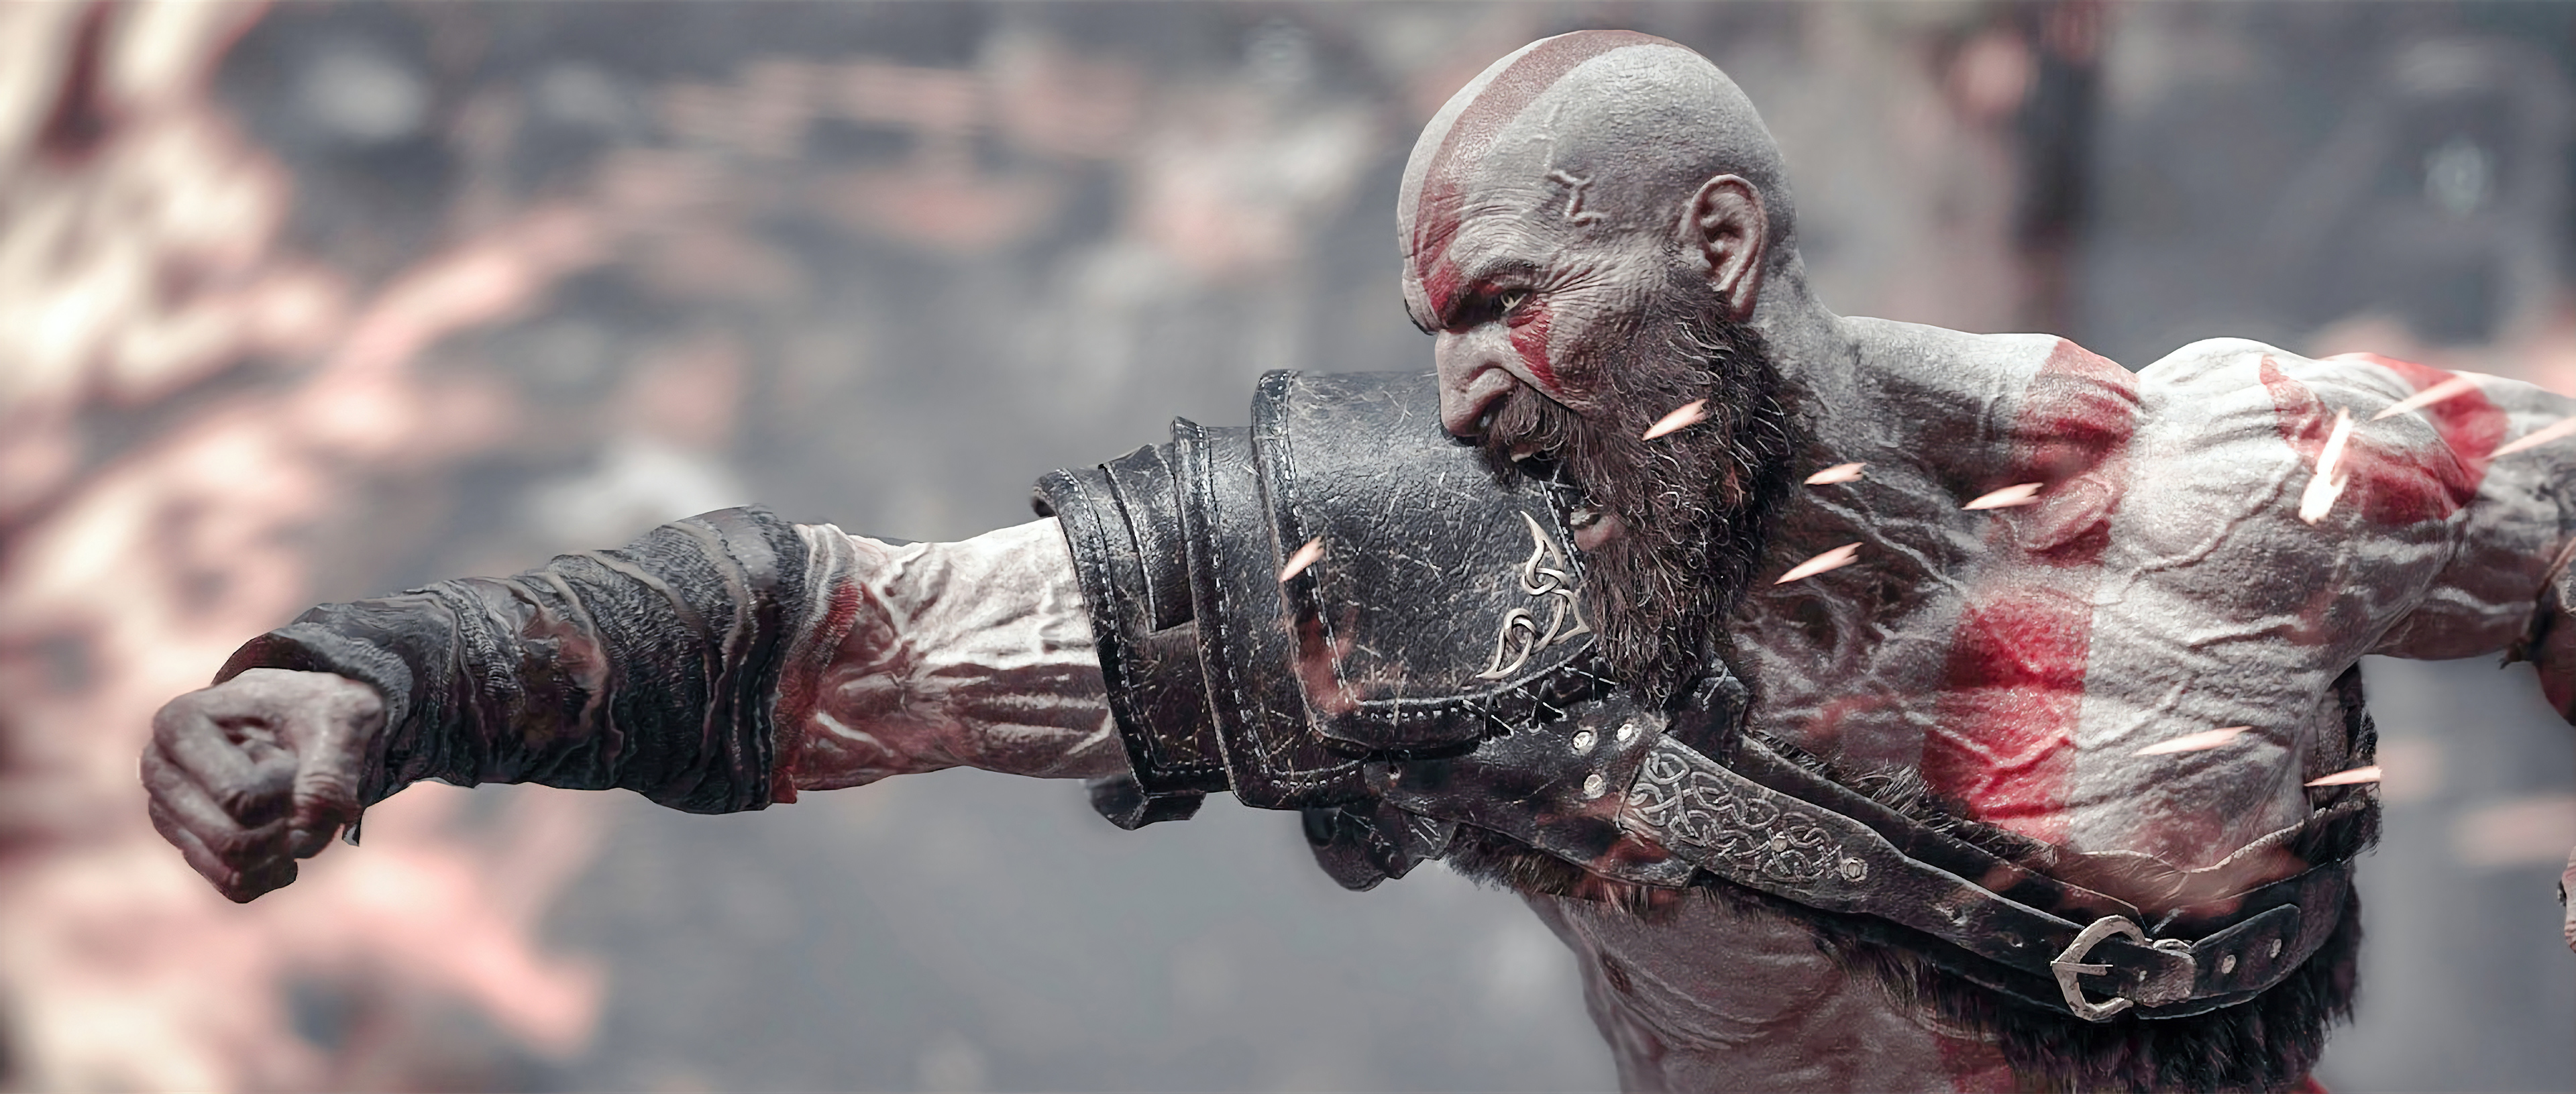 Kratos Yelling. 